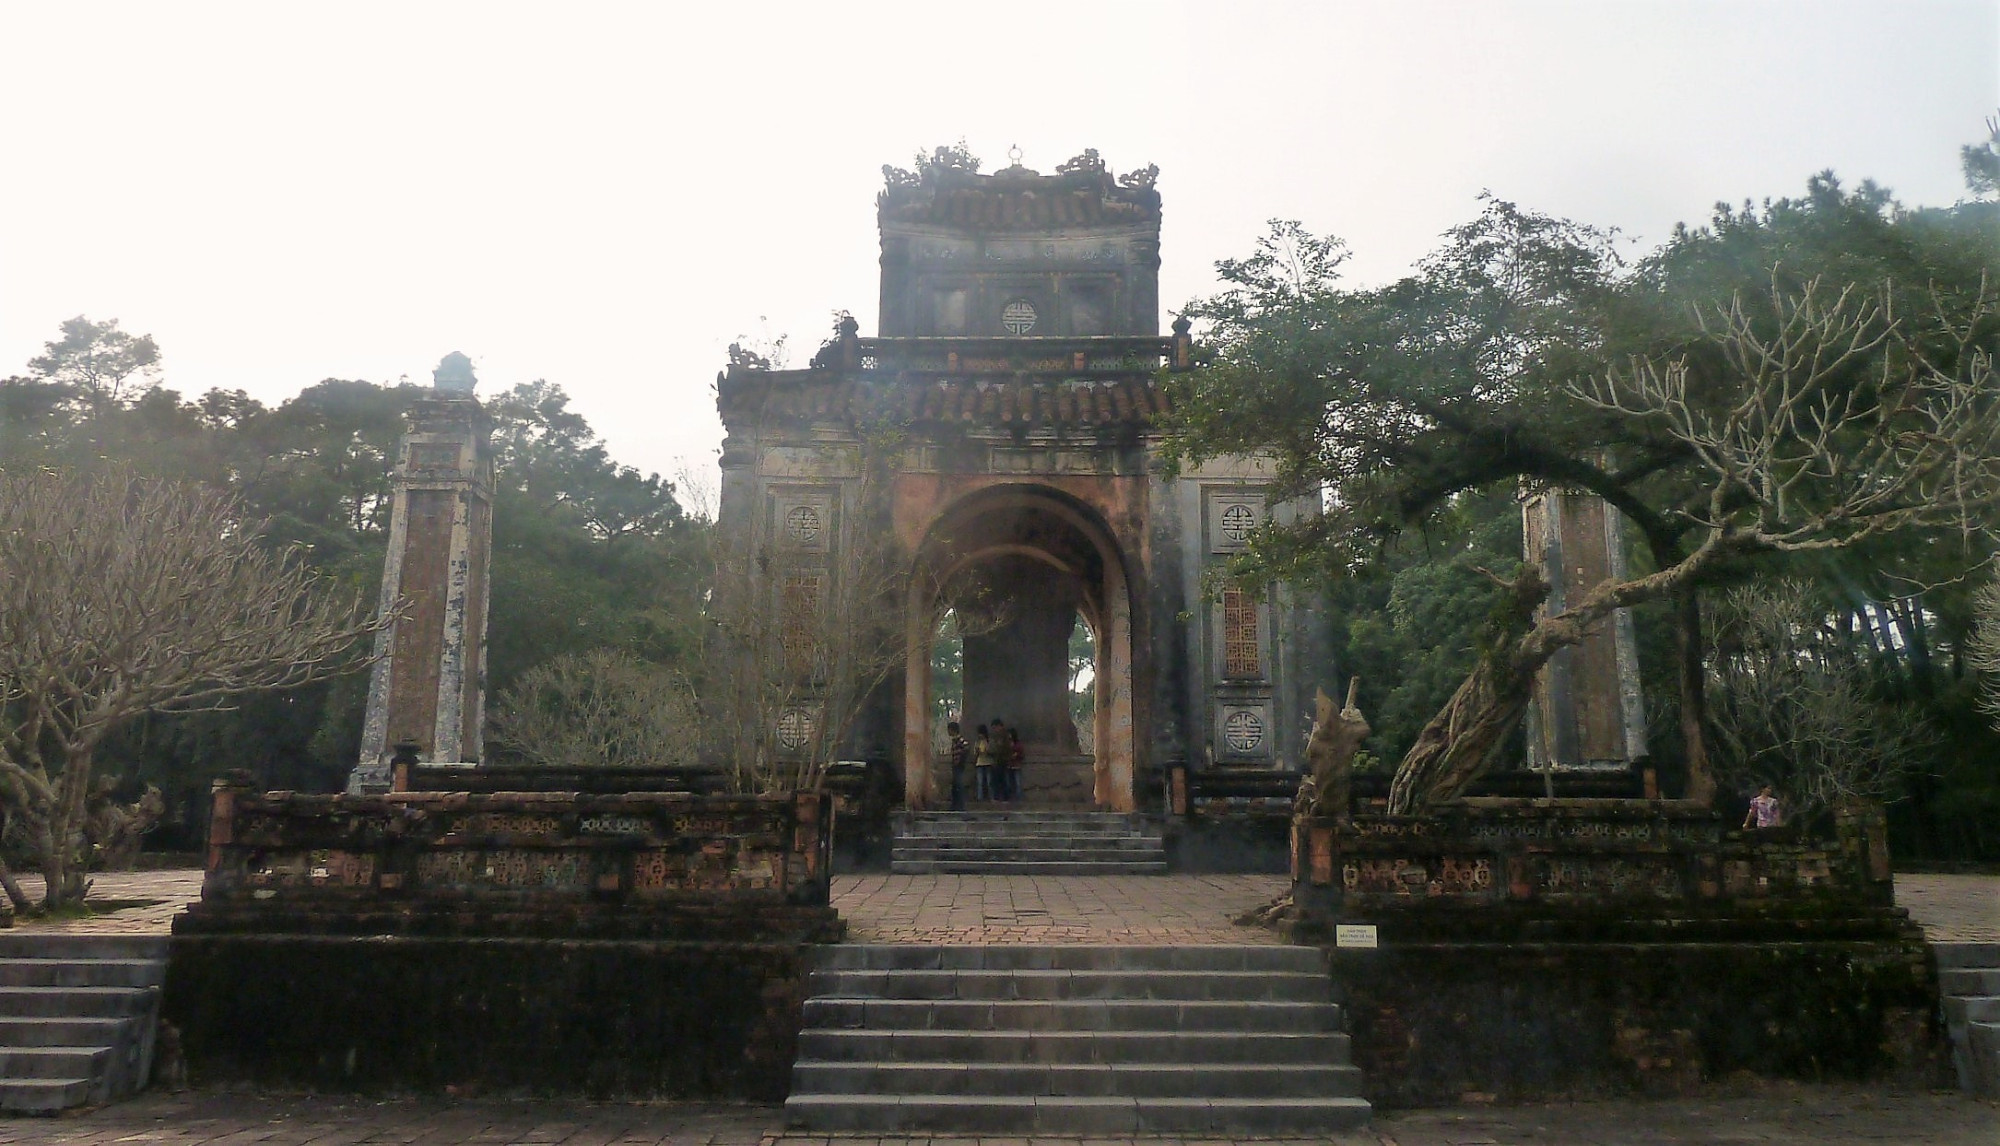 King Tu Duc's Tomb